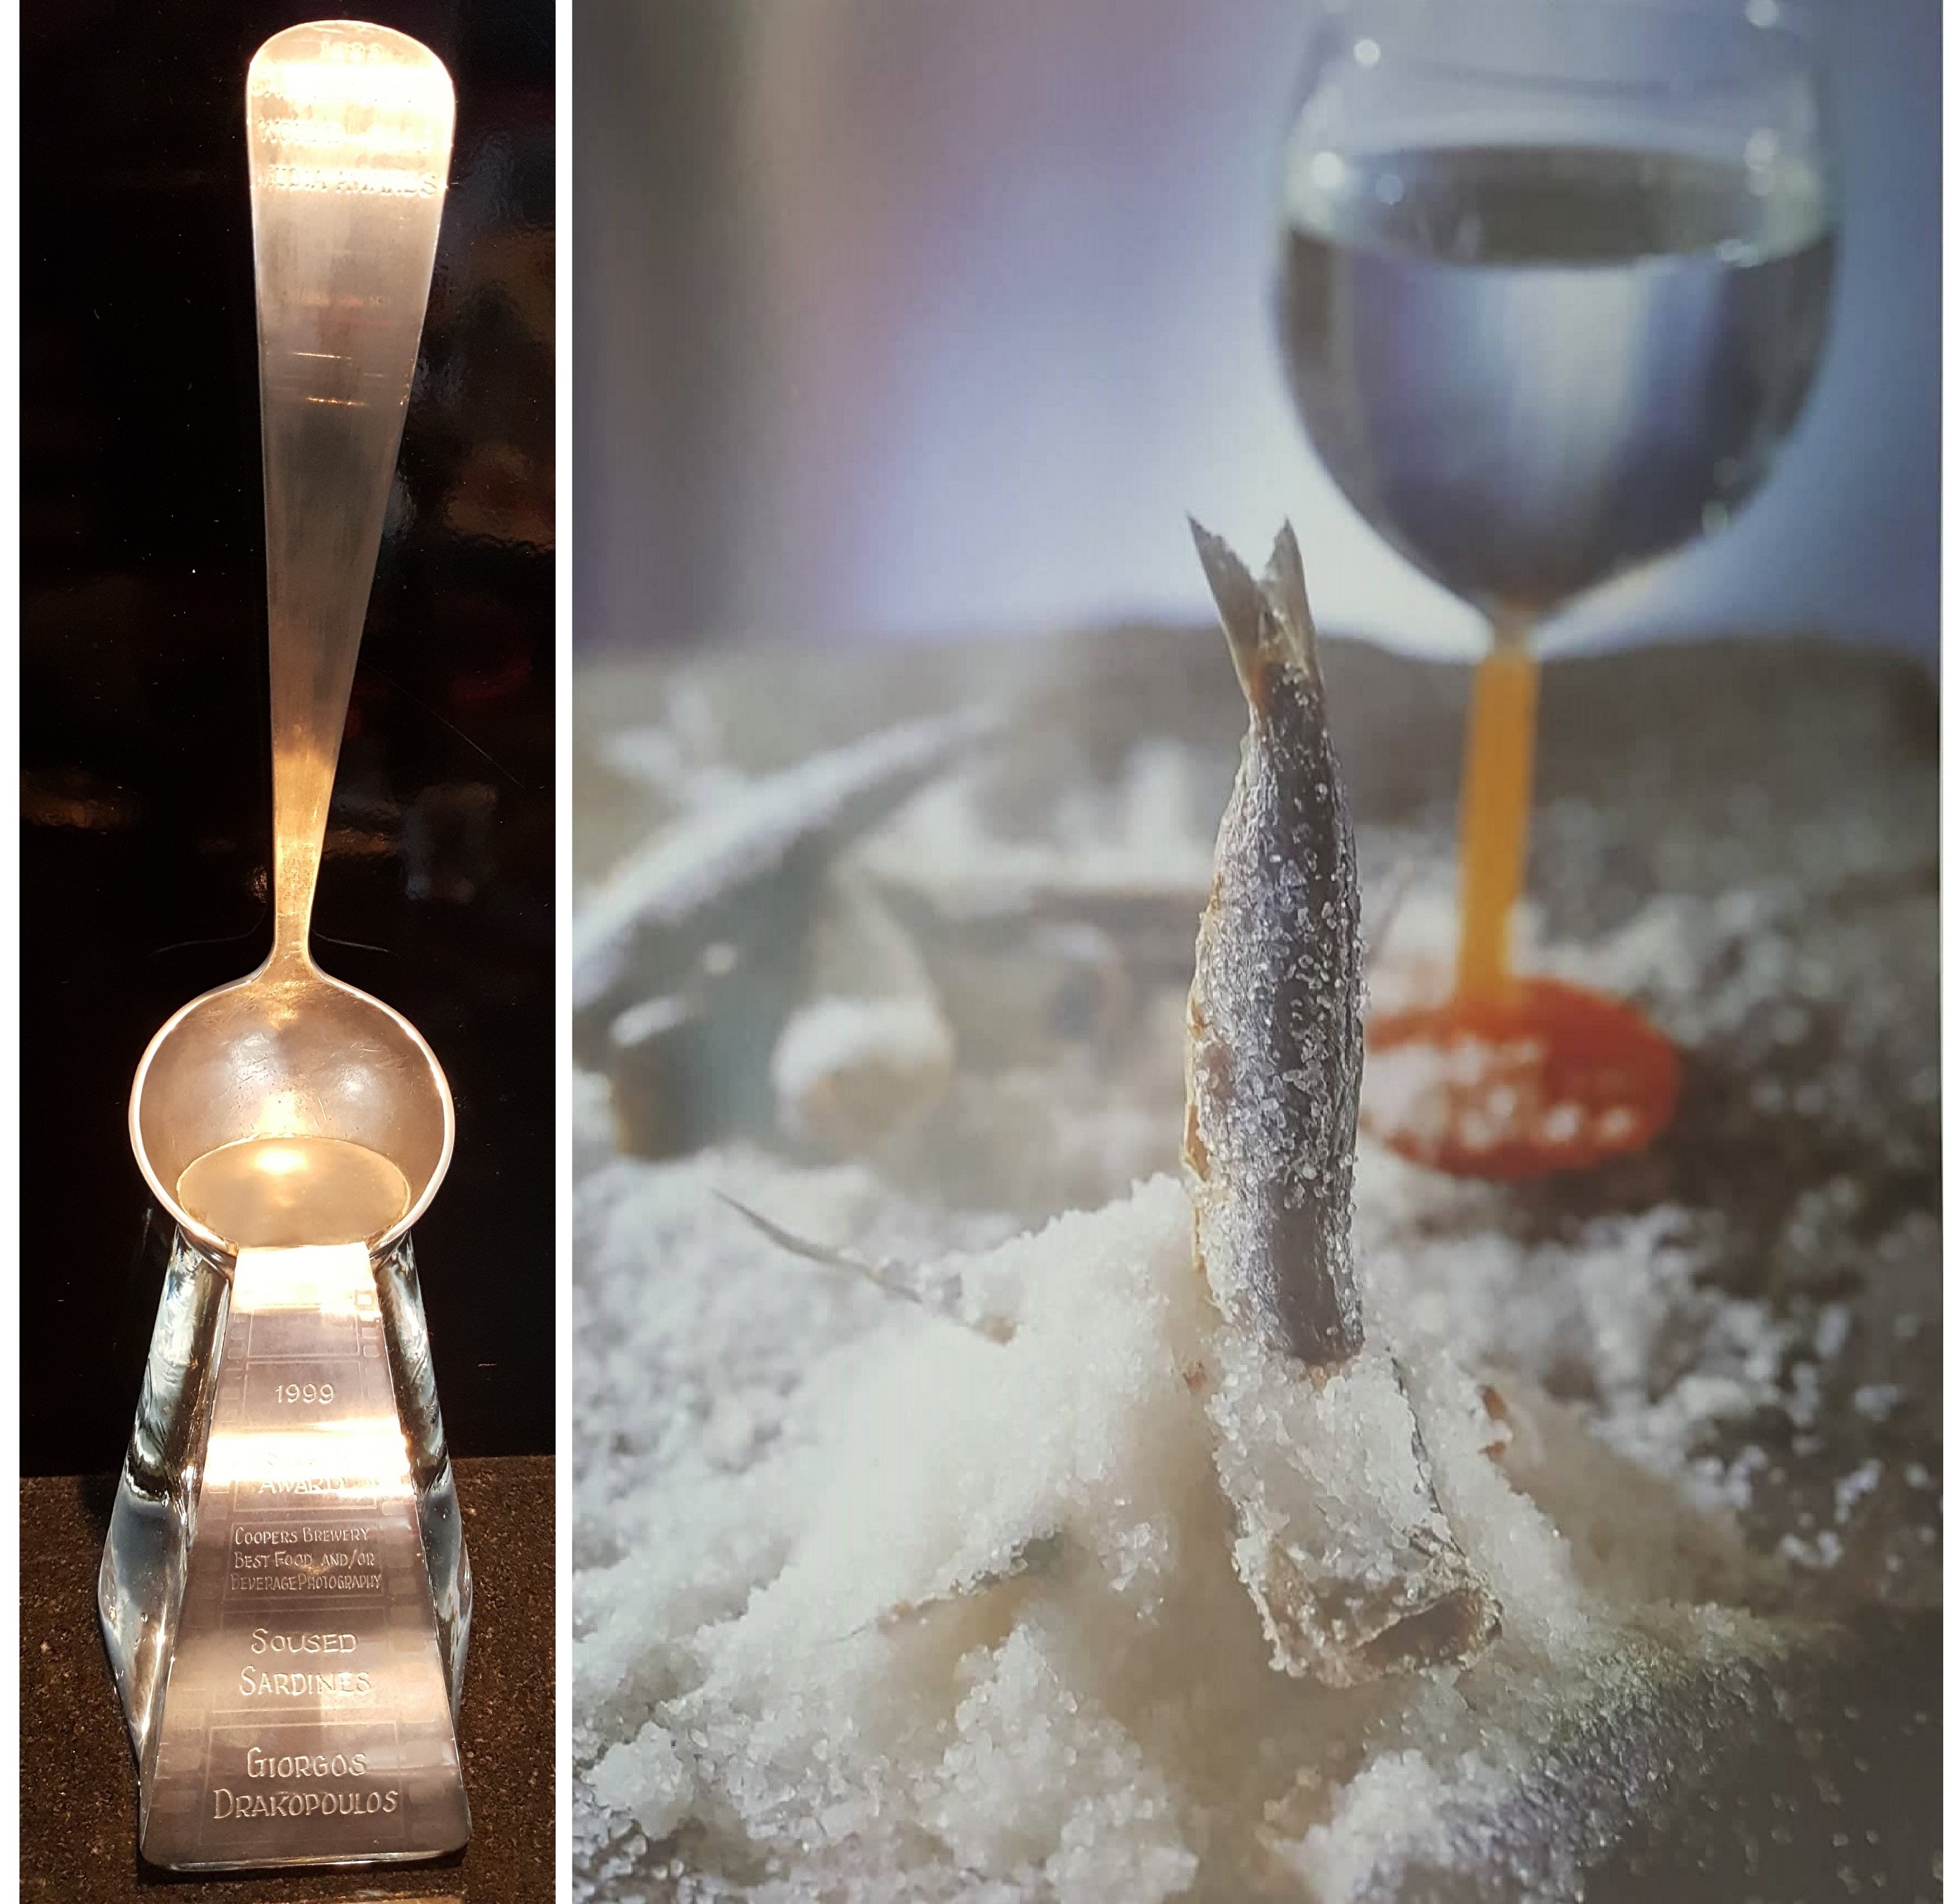 ΒΕΦΑ ΑΛΕΞΙΑΔΟΥ Tasting Australia Silver Ladle Award  Salted sardine vefaalexiadou cookbooks & blog vefaalexiadou.gr